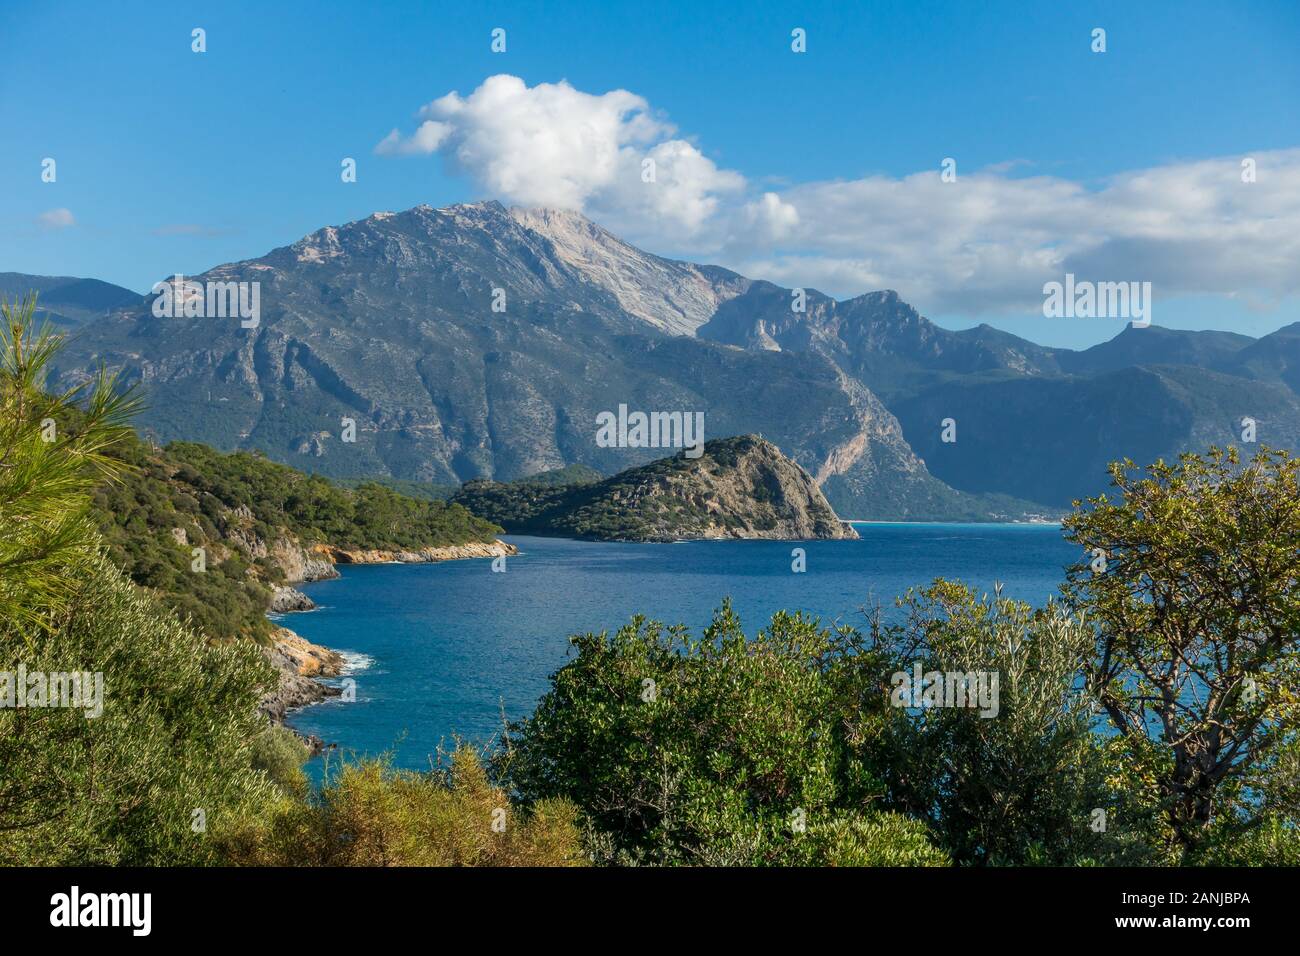 View to Gemiler Island and Babadag Mountain, Gemiler, Fethiye, Aegean Turquoise coast, Anatolia, Turkey, Asia Minor, Eurasia Stock Photo